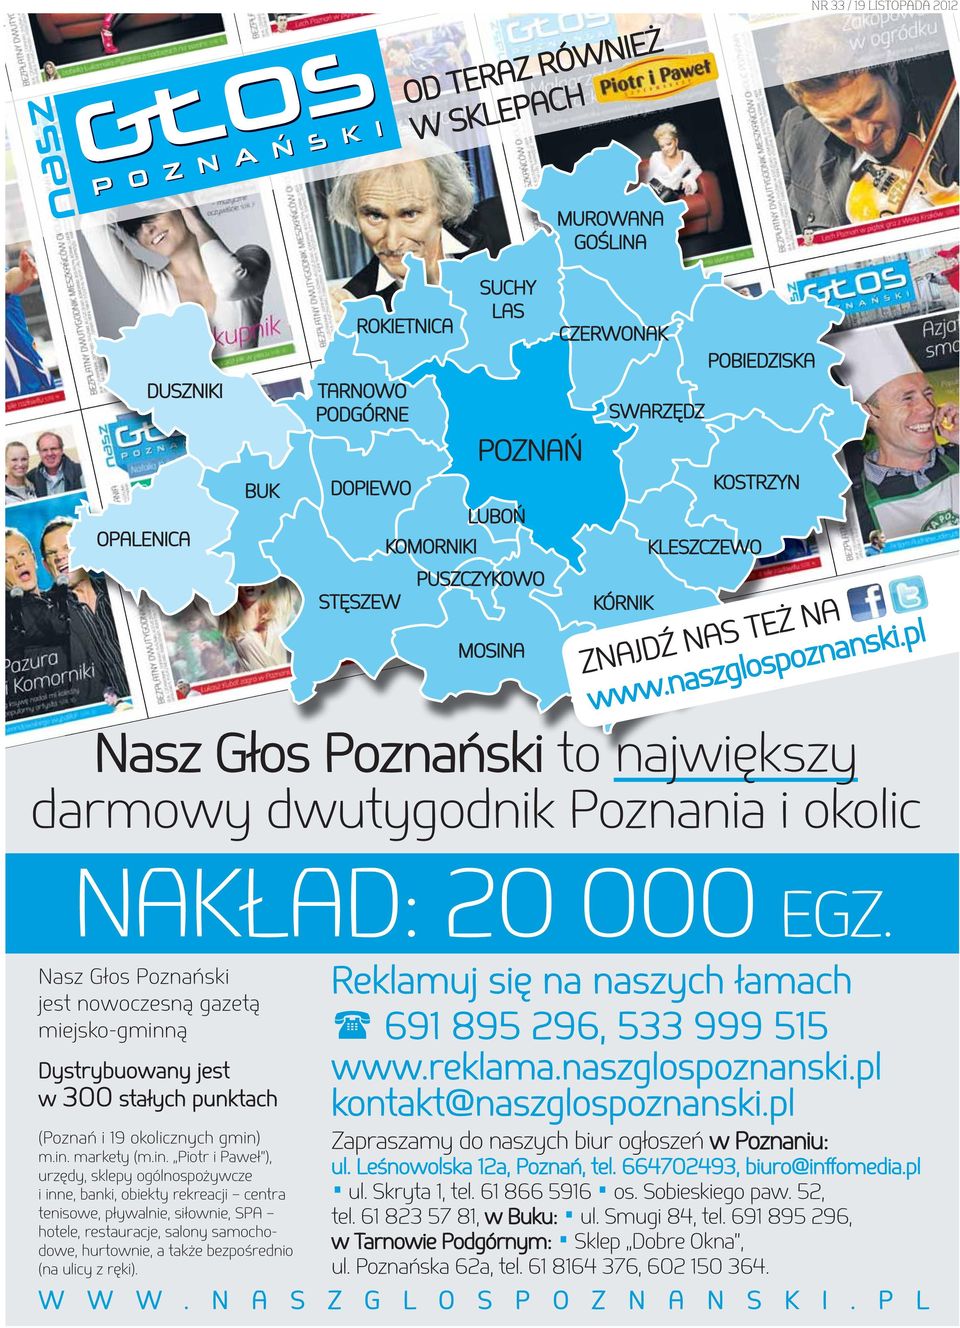 pl Nasz Głos Poznański Nasz Głos Poznański to największy darmowy dwutygodnik Poznania i okolic NAKŁAD: 20 000 EGZ.